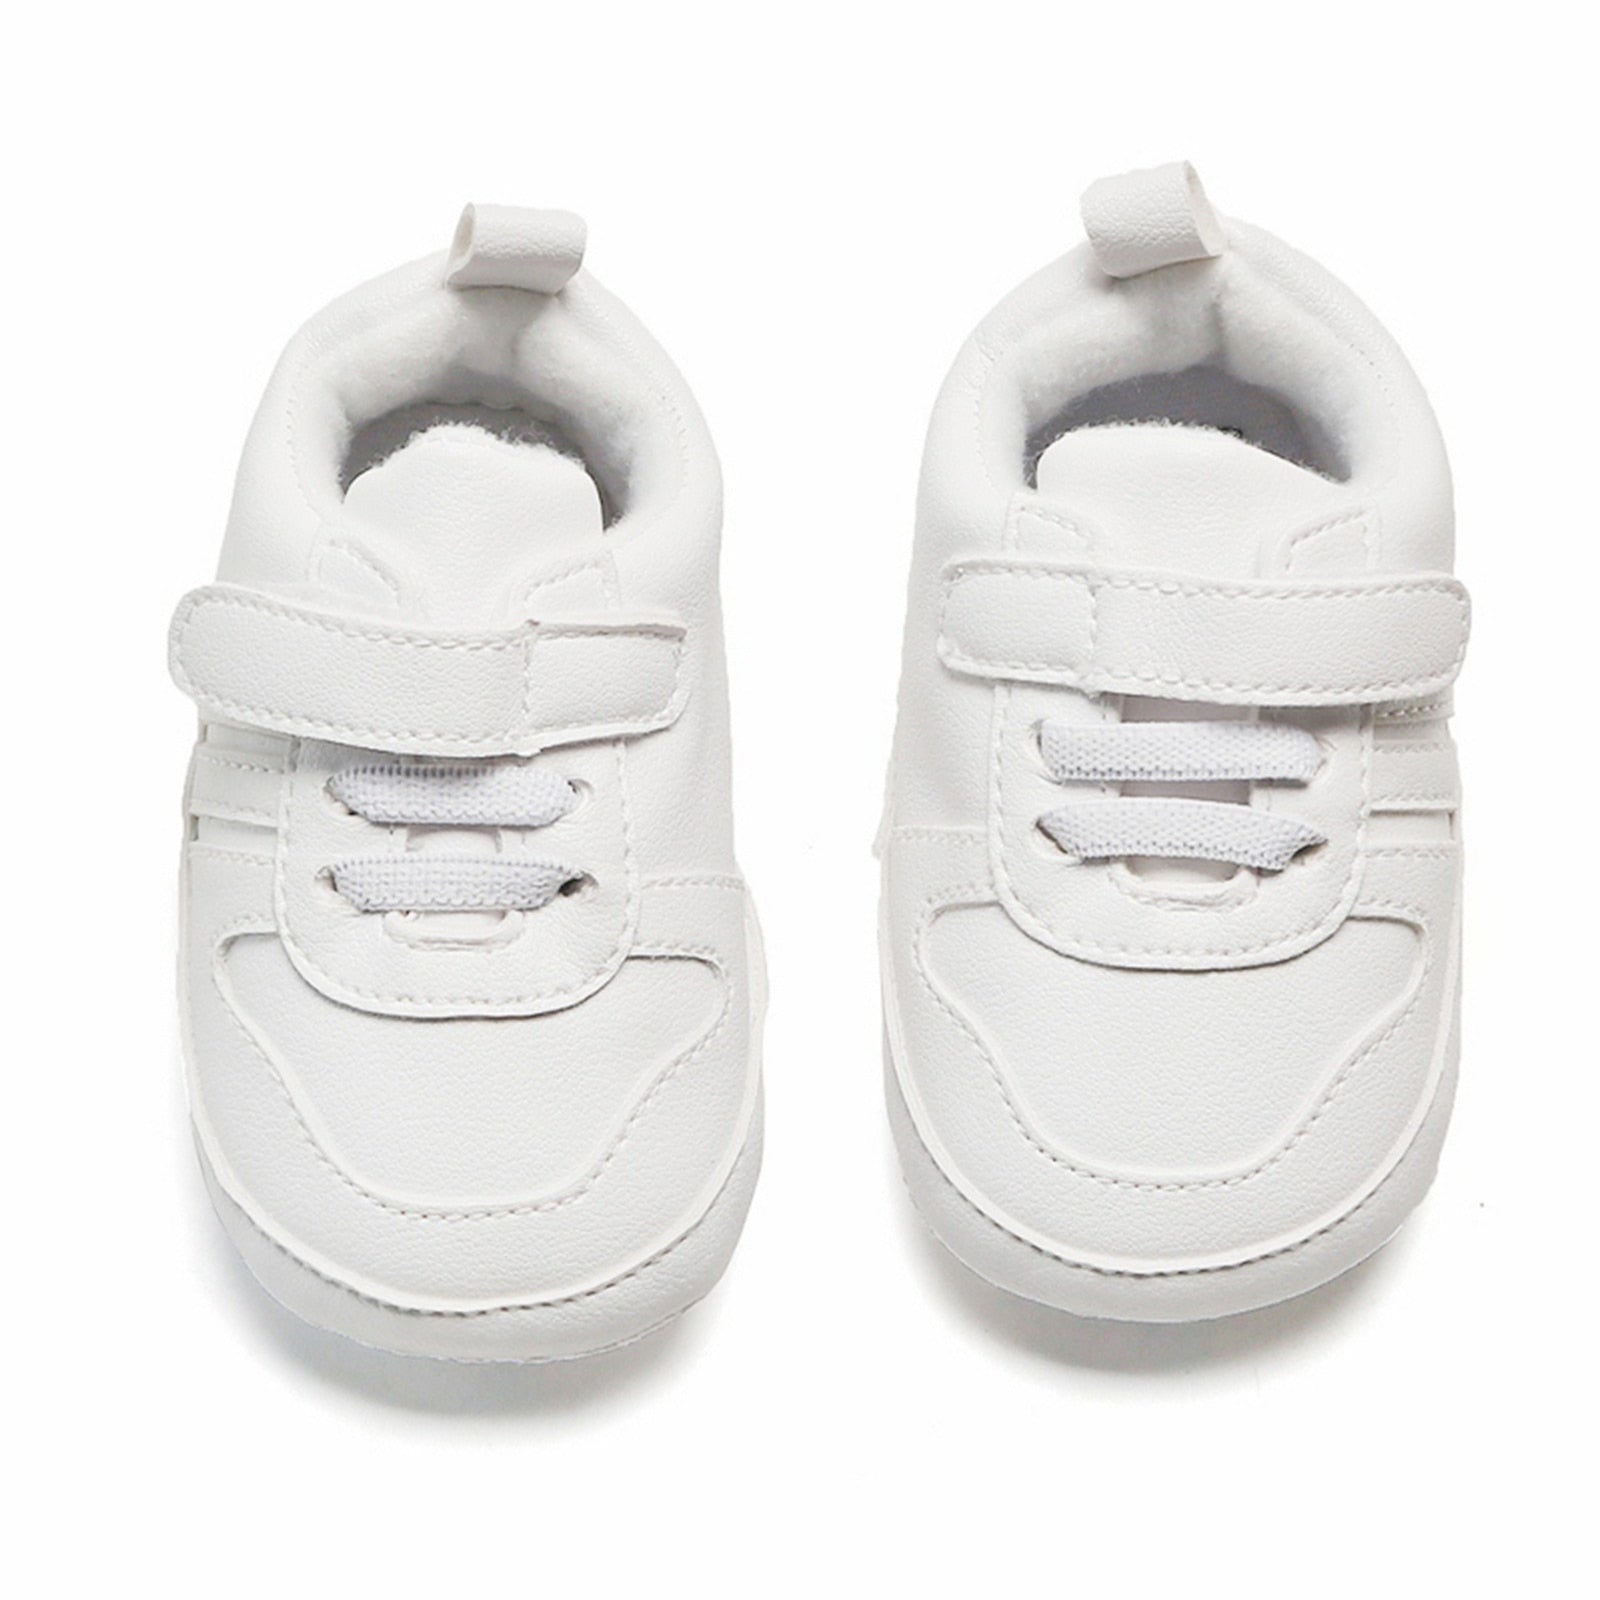 Sapatênis Branco Clássico Sapato Loja Click Certo Fecho com Cadarço 0-6 Meses 11cm 